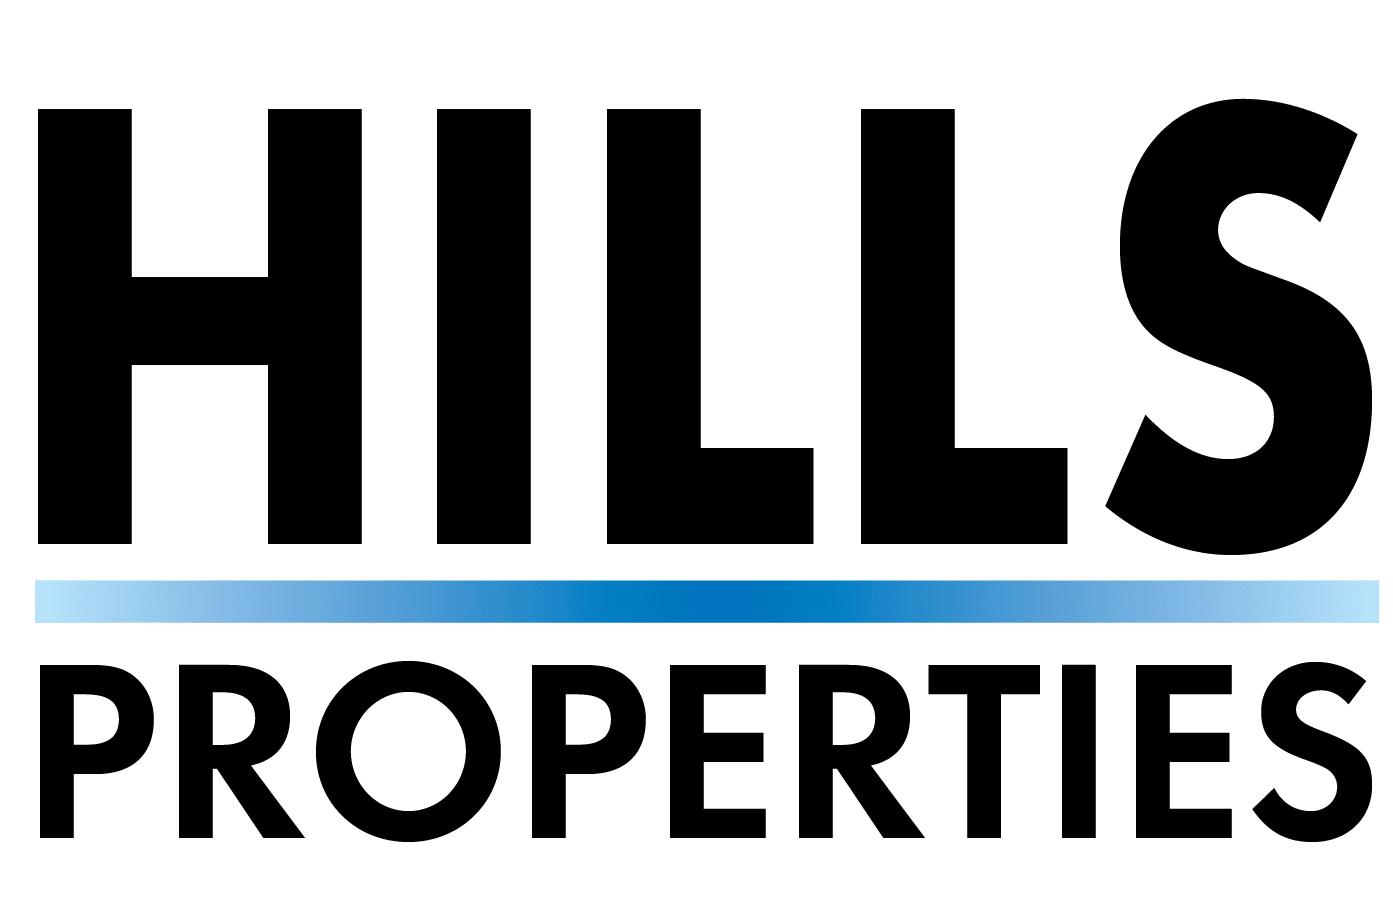 Hills Properties